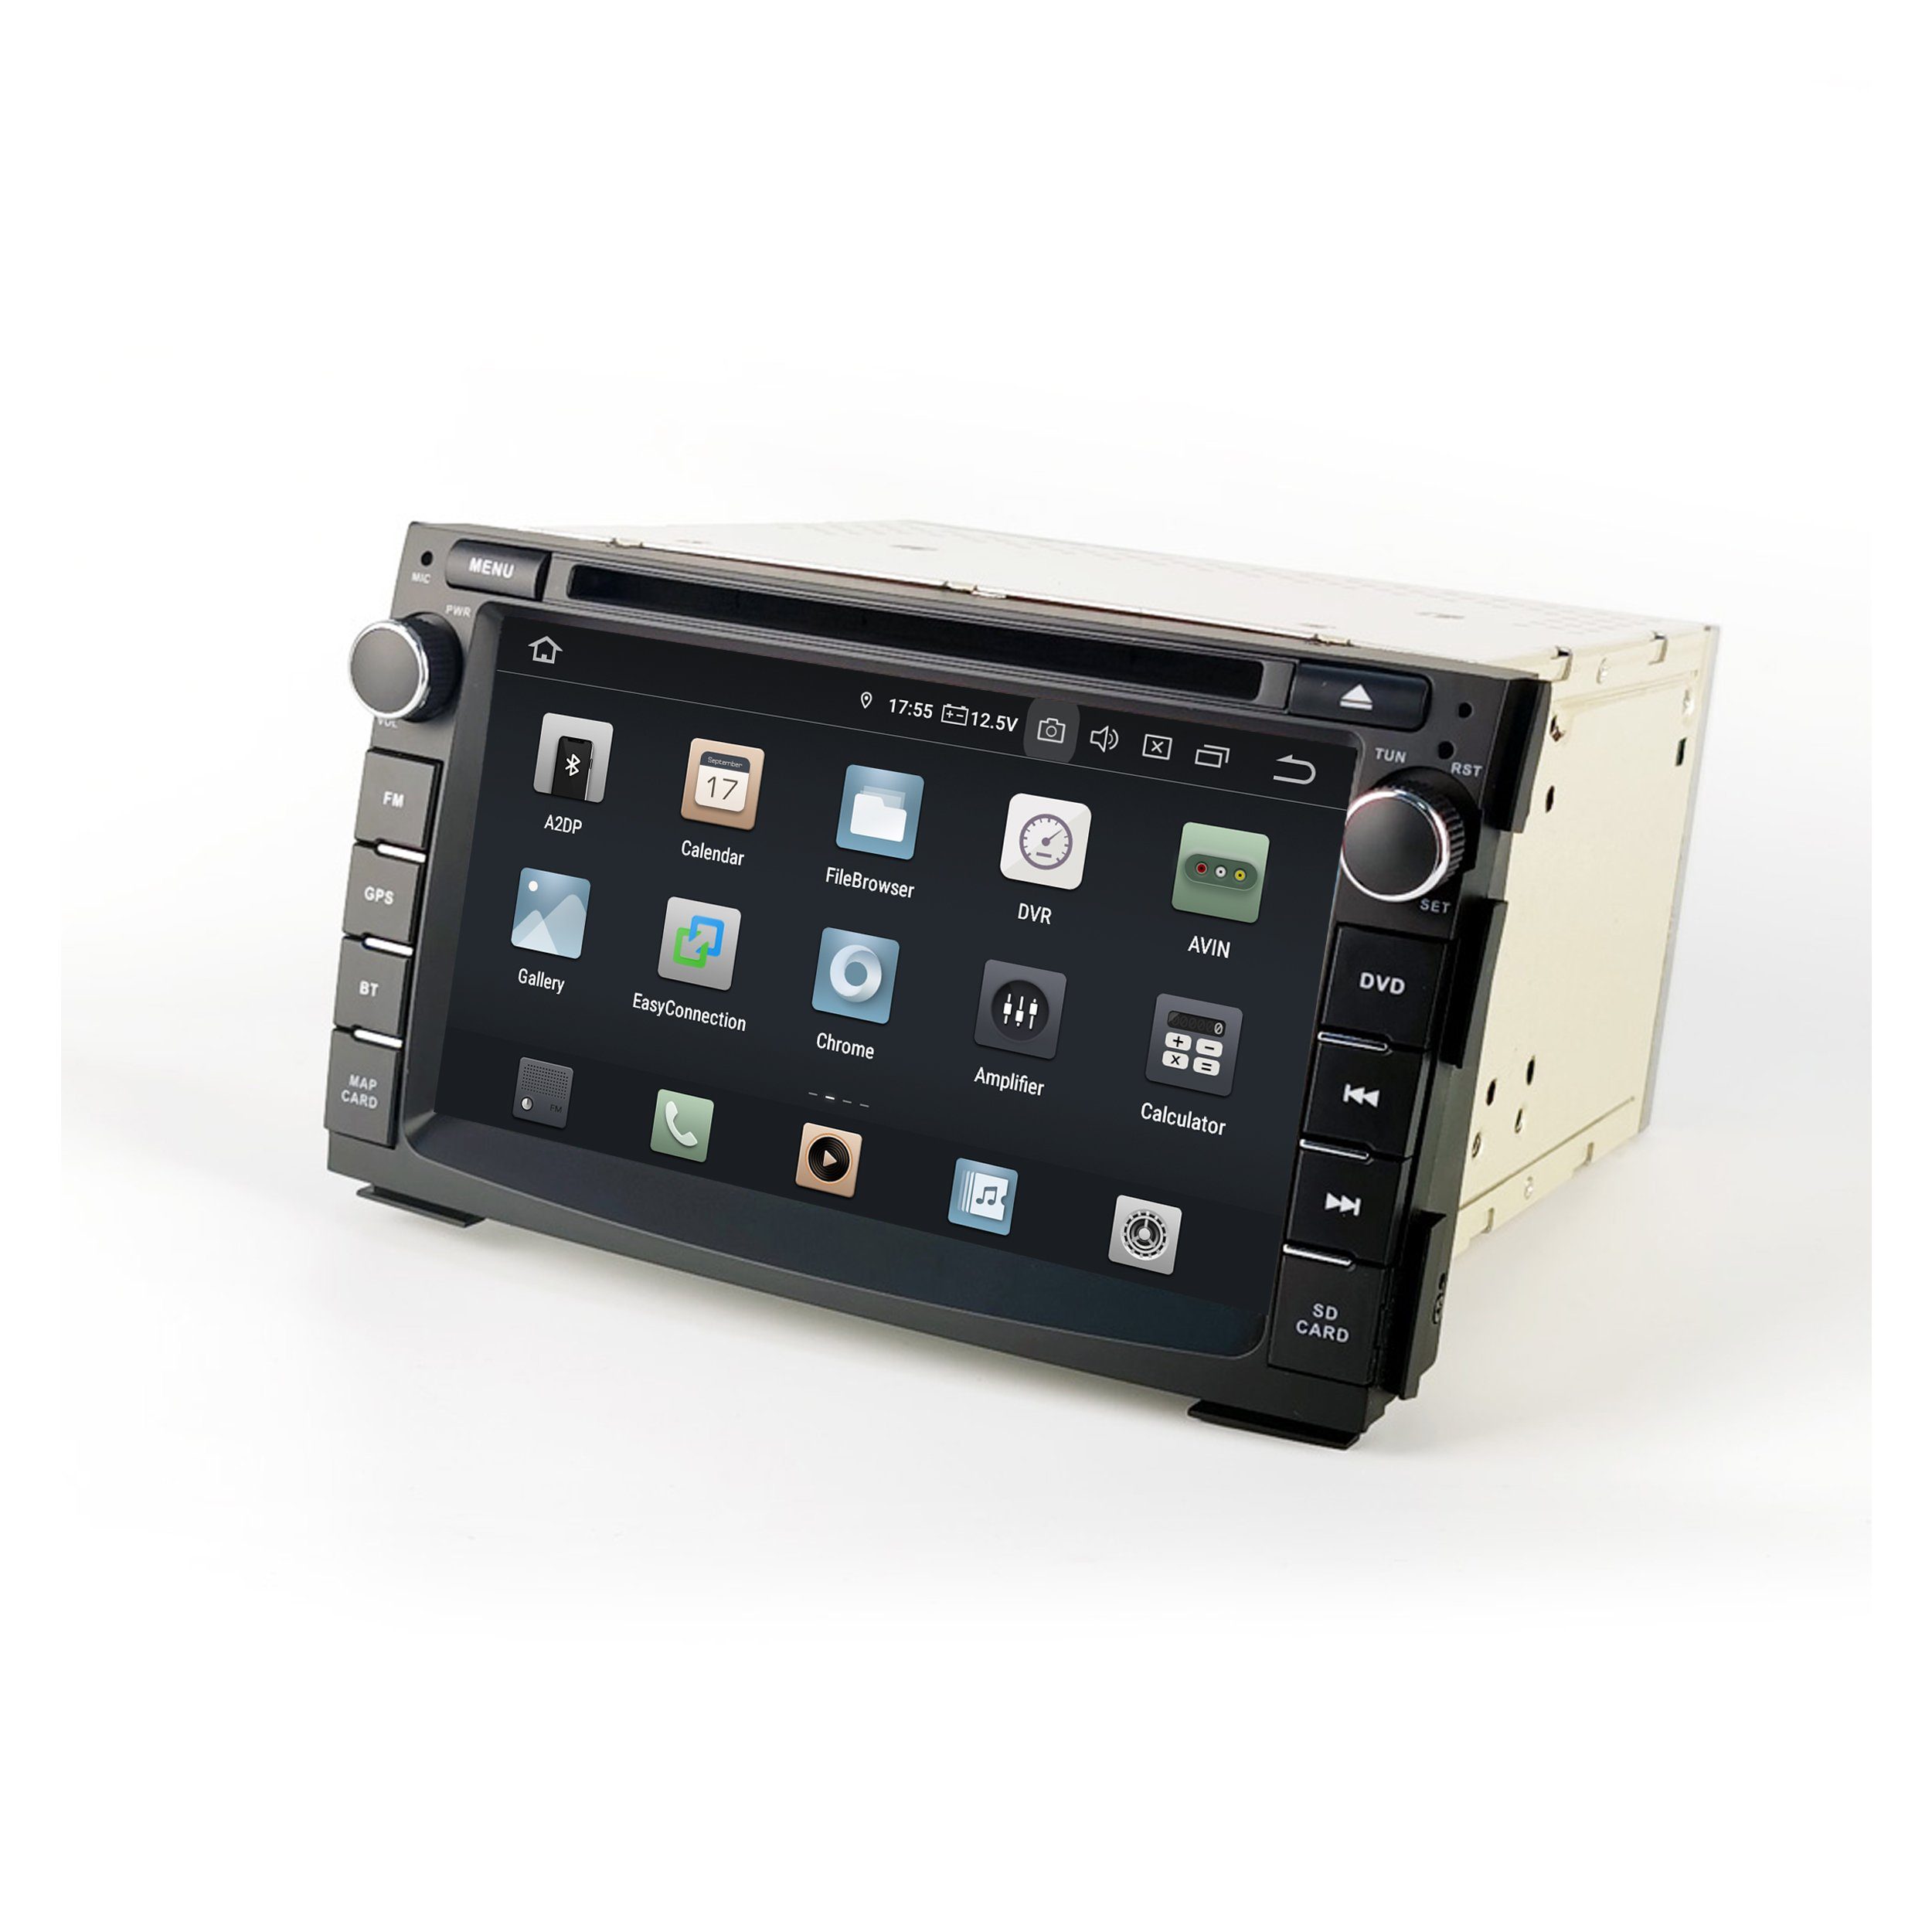 TAFFIO Radio Touch 7" Cee'd Android GPS Für CarPlay Venga Einbau-Navigationsgerät DVD AndroidAuto Kia